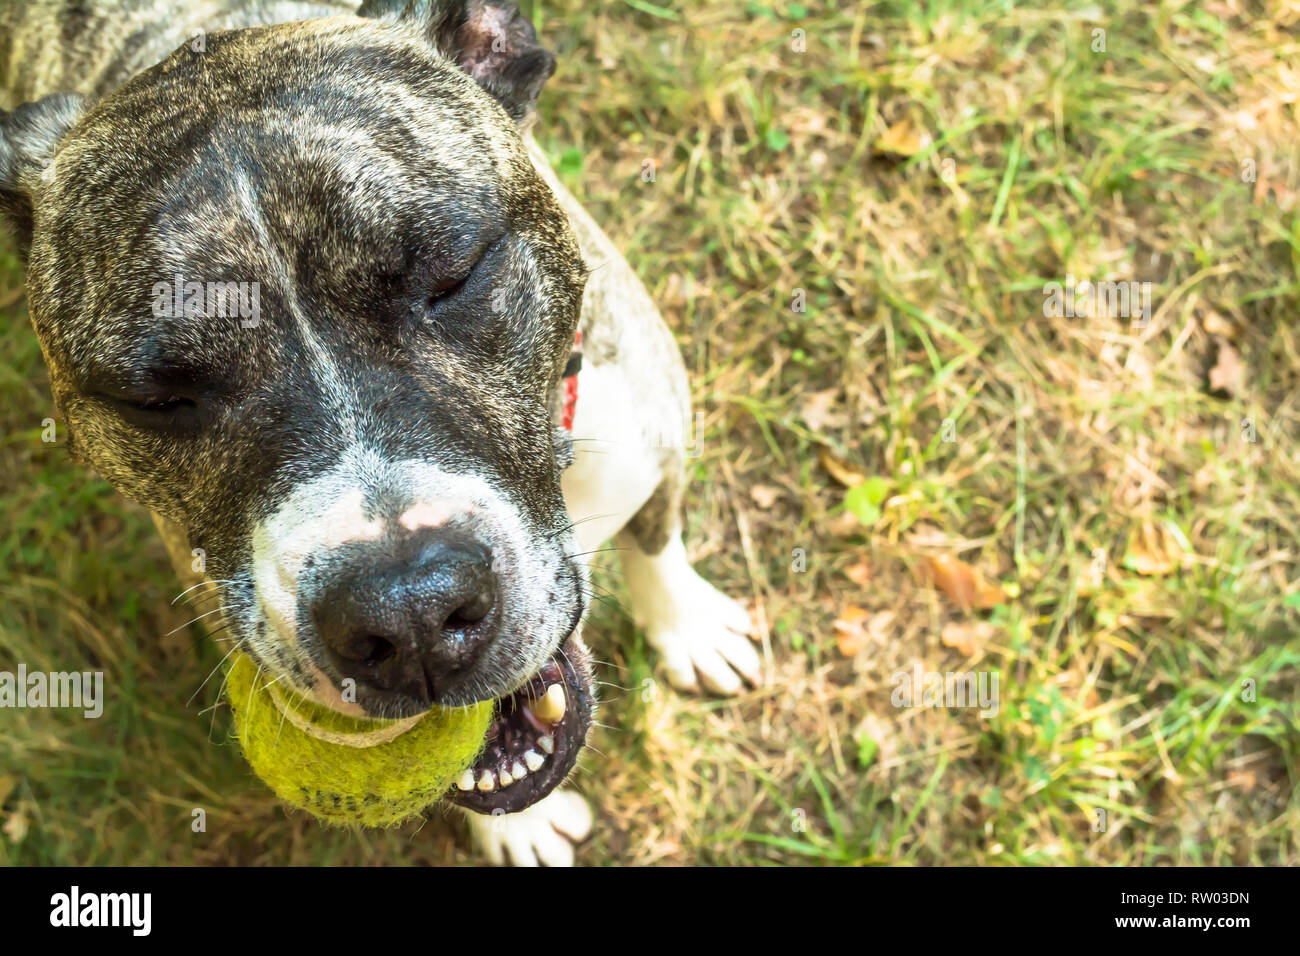 Race de chien Boerboel avec une balle de tennis dans ses dents sur la nature dans le parc en été, close-up Banque D'Images